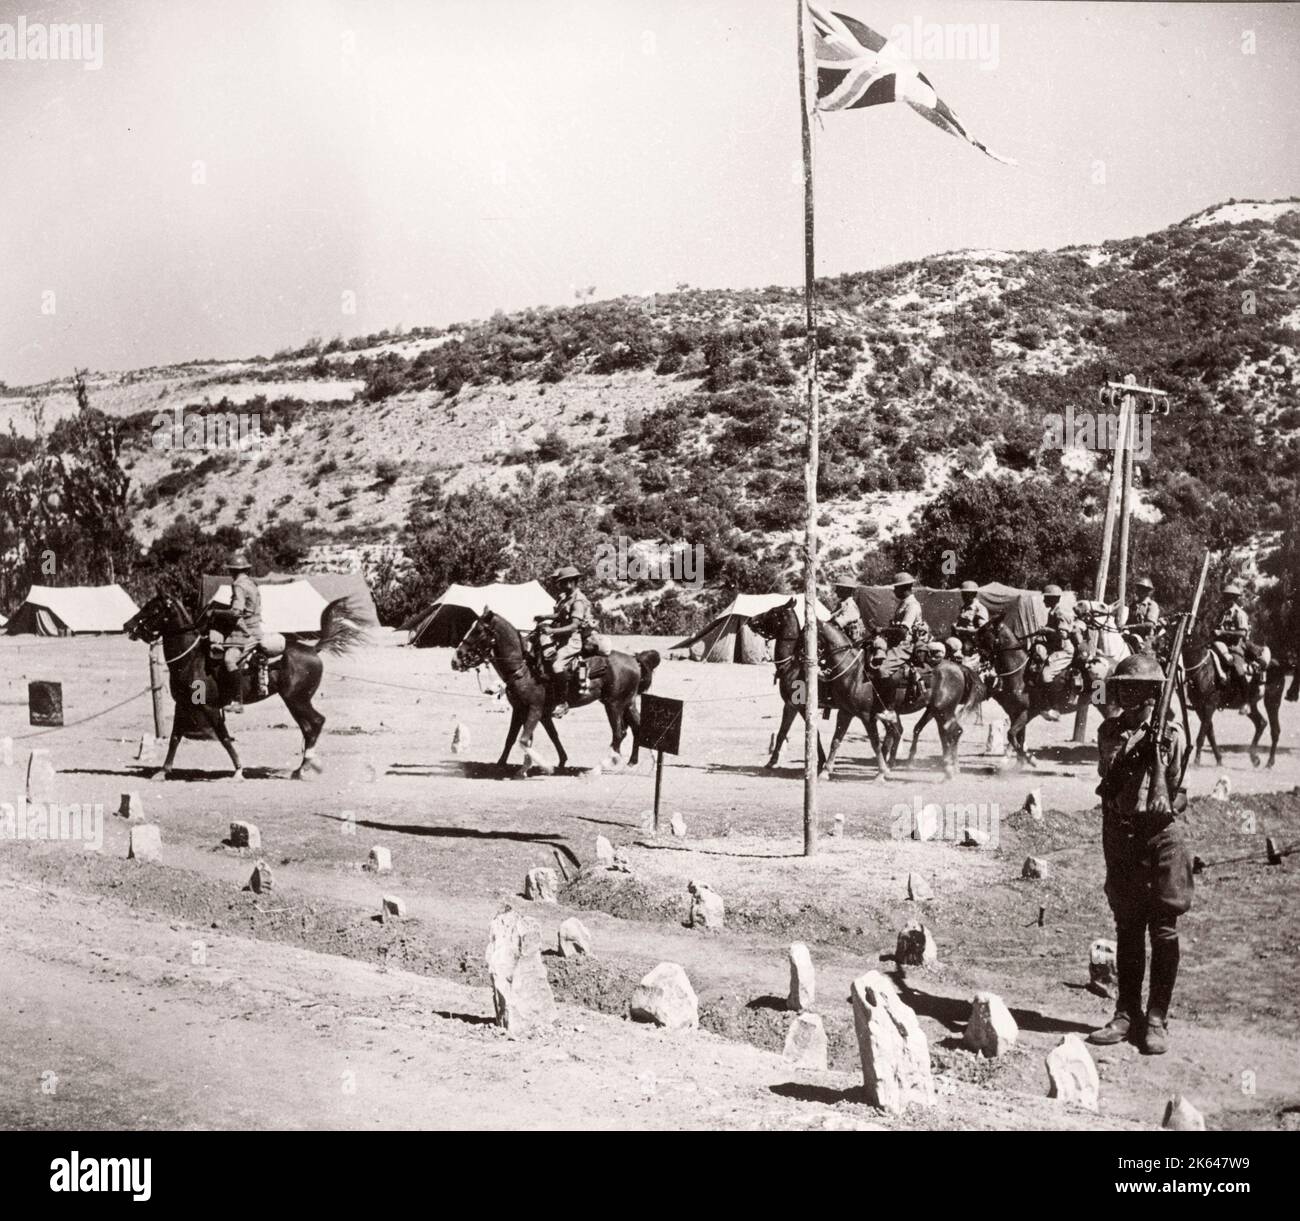 1943 Syrie - régiment d'armée TJFF de la Force frontalière transjordanienne ou transjordanienne Photographie d'un officier de recrutement de l'armée britannique stationné en Afrique de l'est et au Moyen-Orient pendant la Seconde Guerre mondiale Banque D'Images